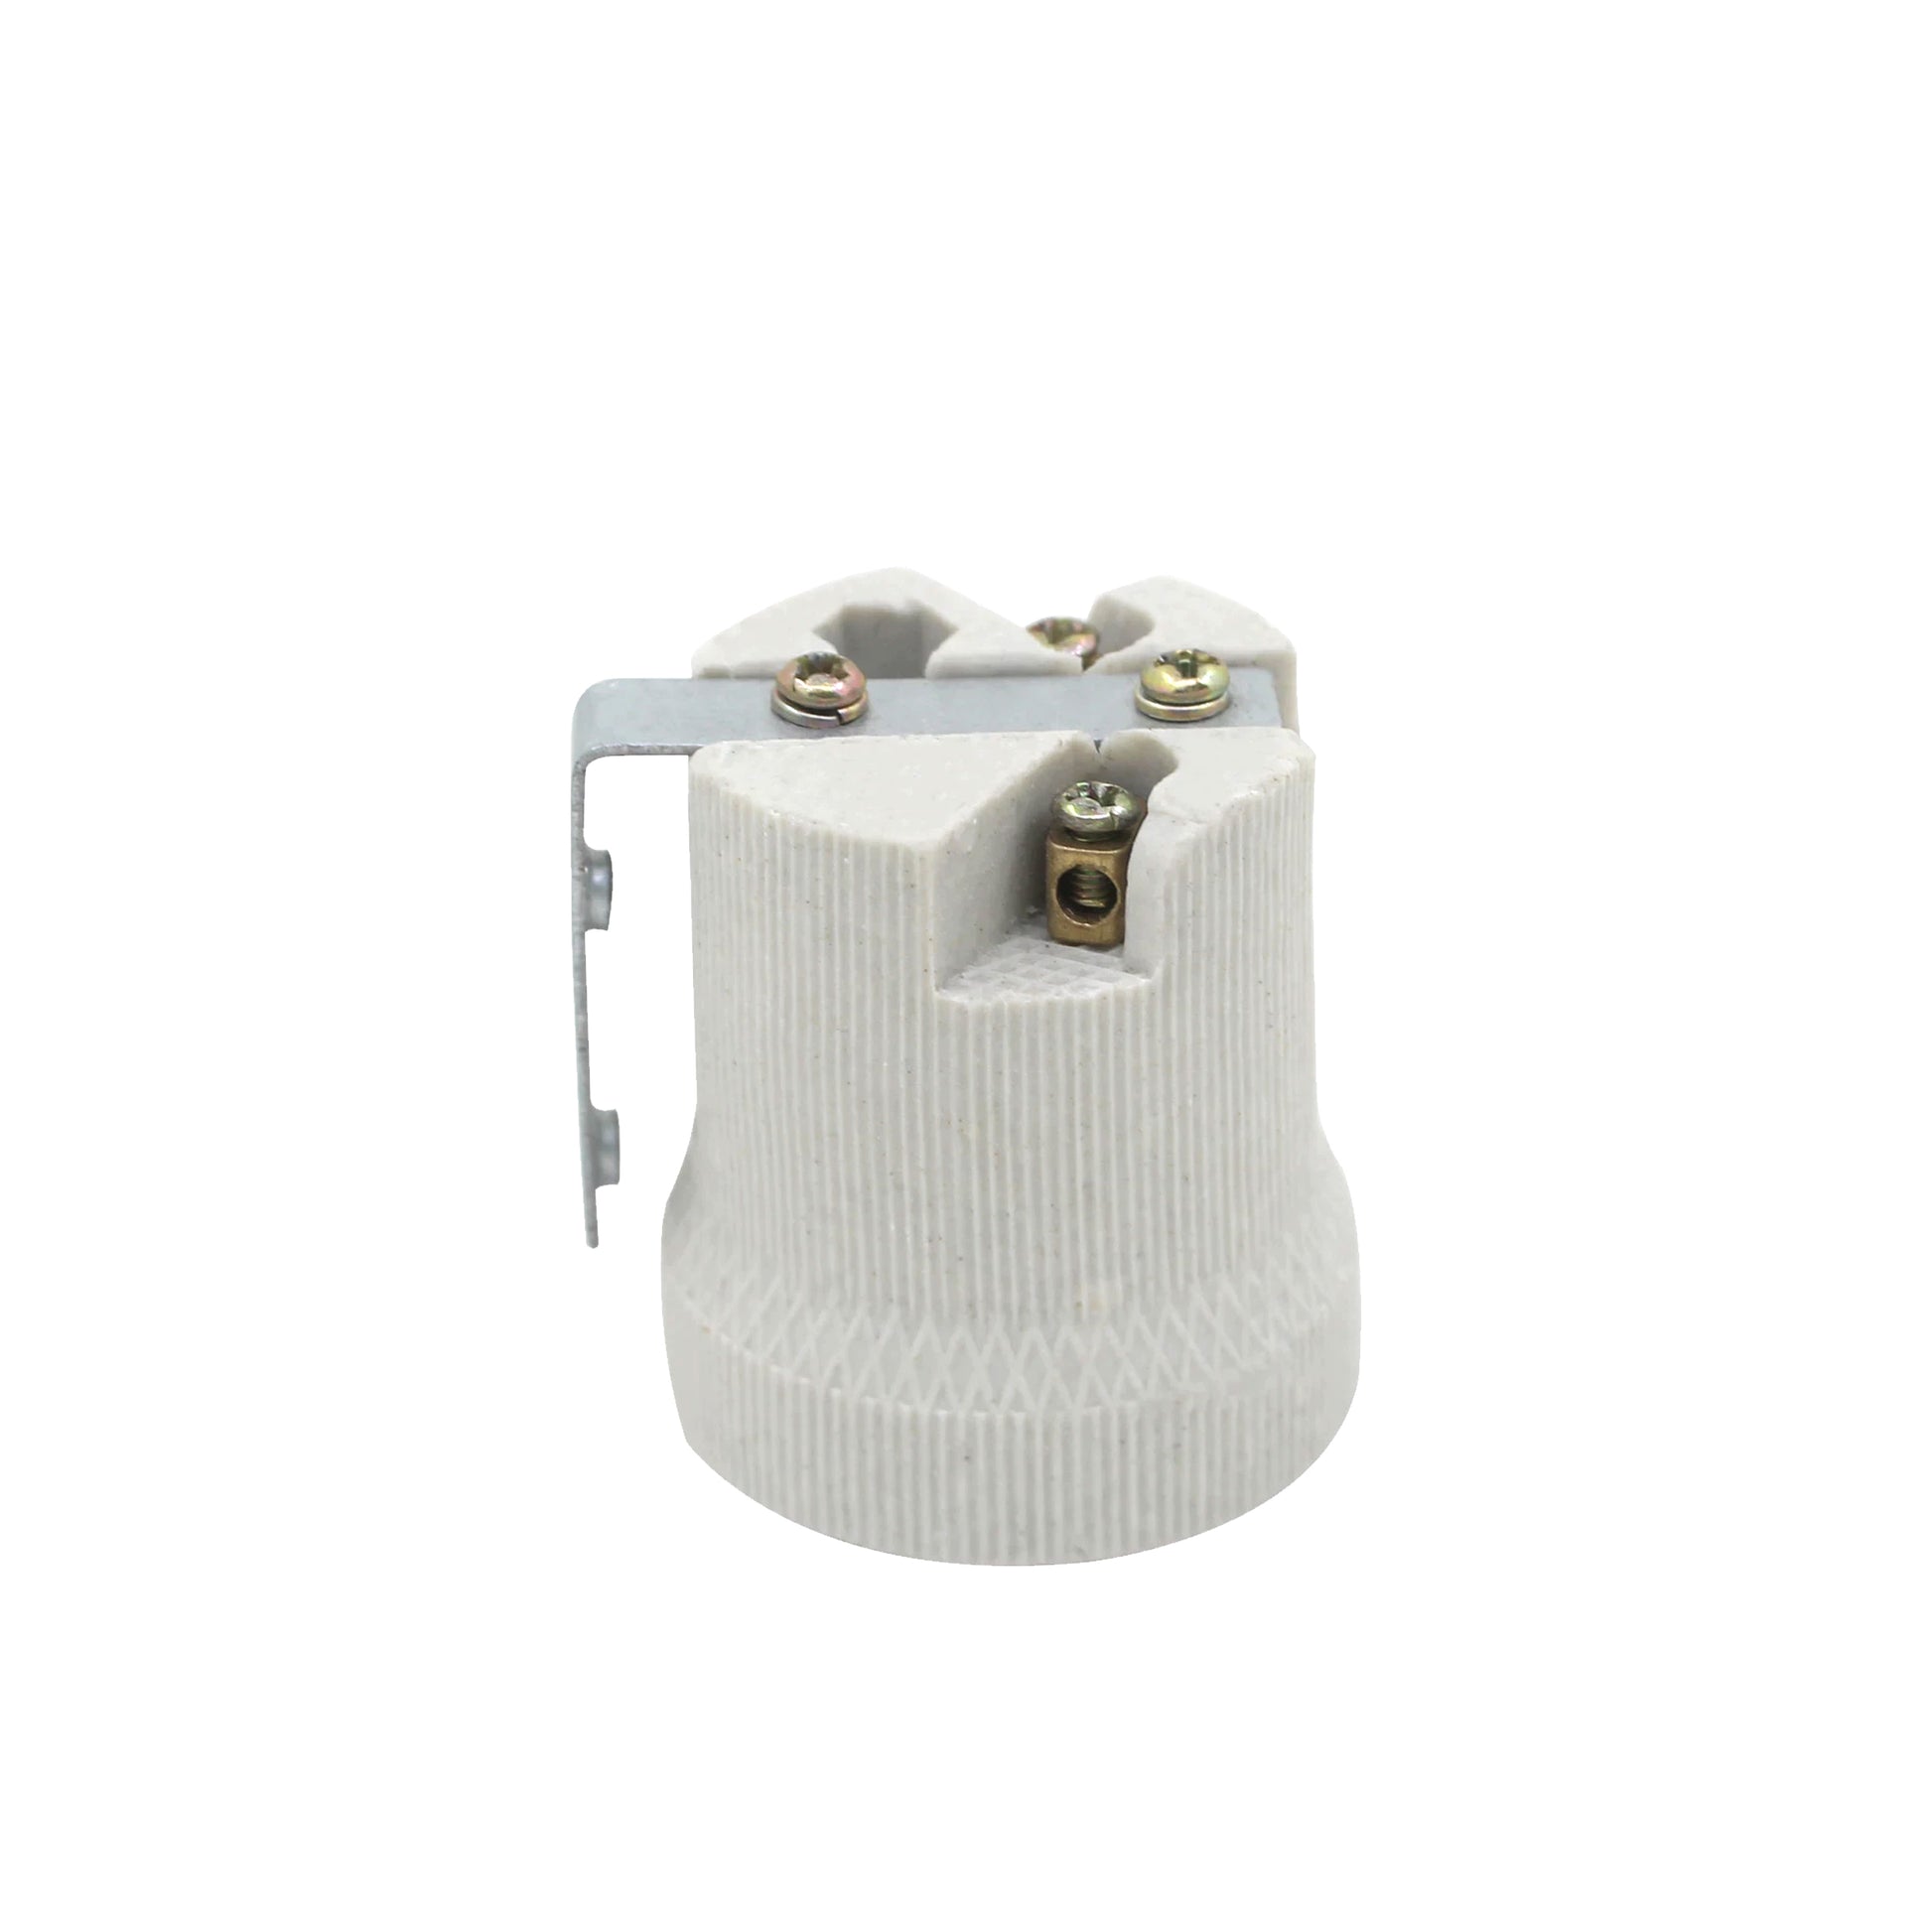 E27 Bulb Holder Edison Screw White Ceramic Porcelain Lamp holder For Table Lamp E27 60W Plain Lamp holder Socket UK.